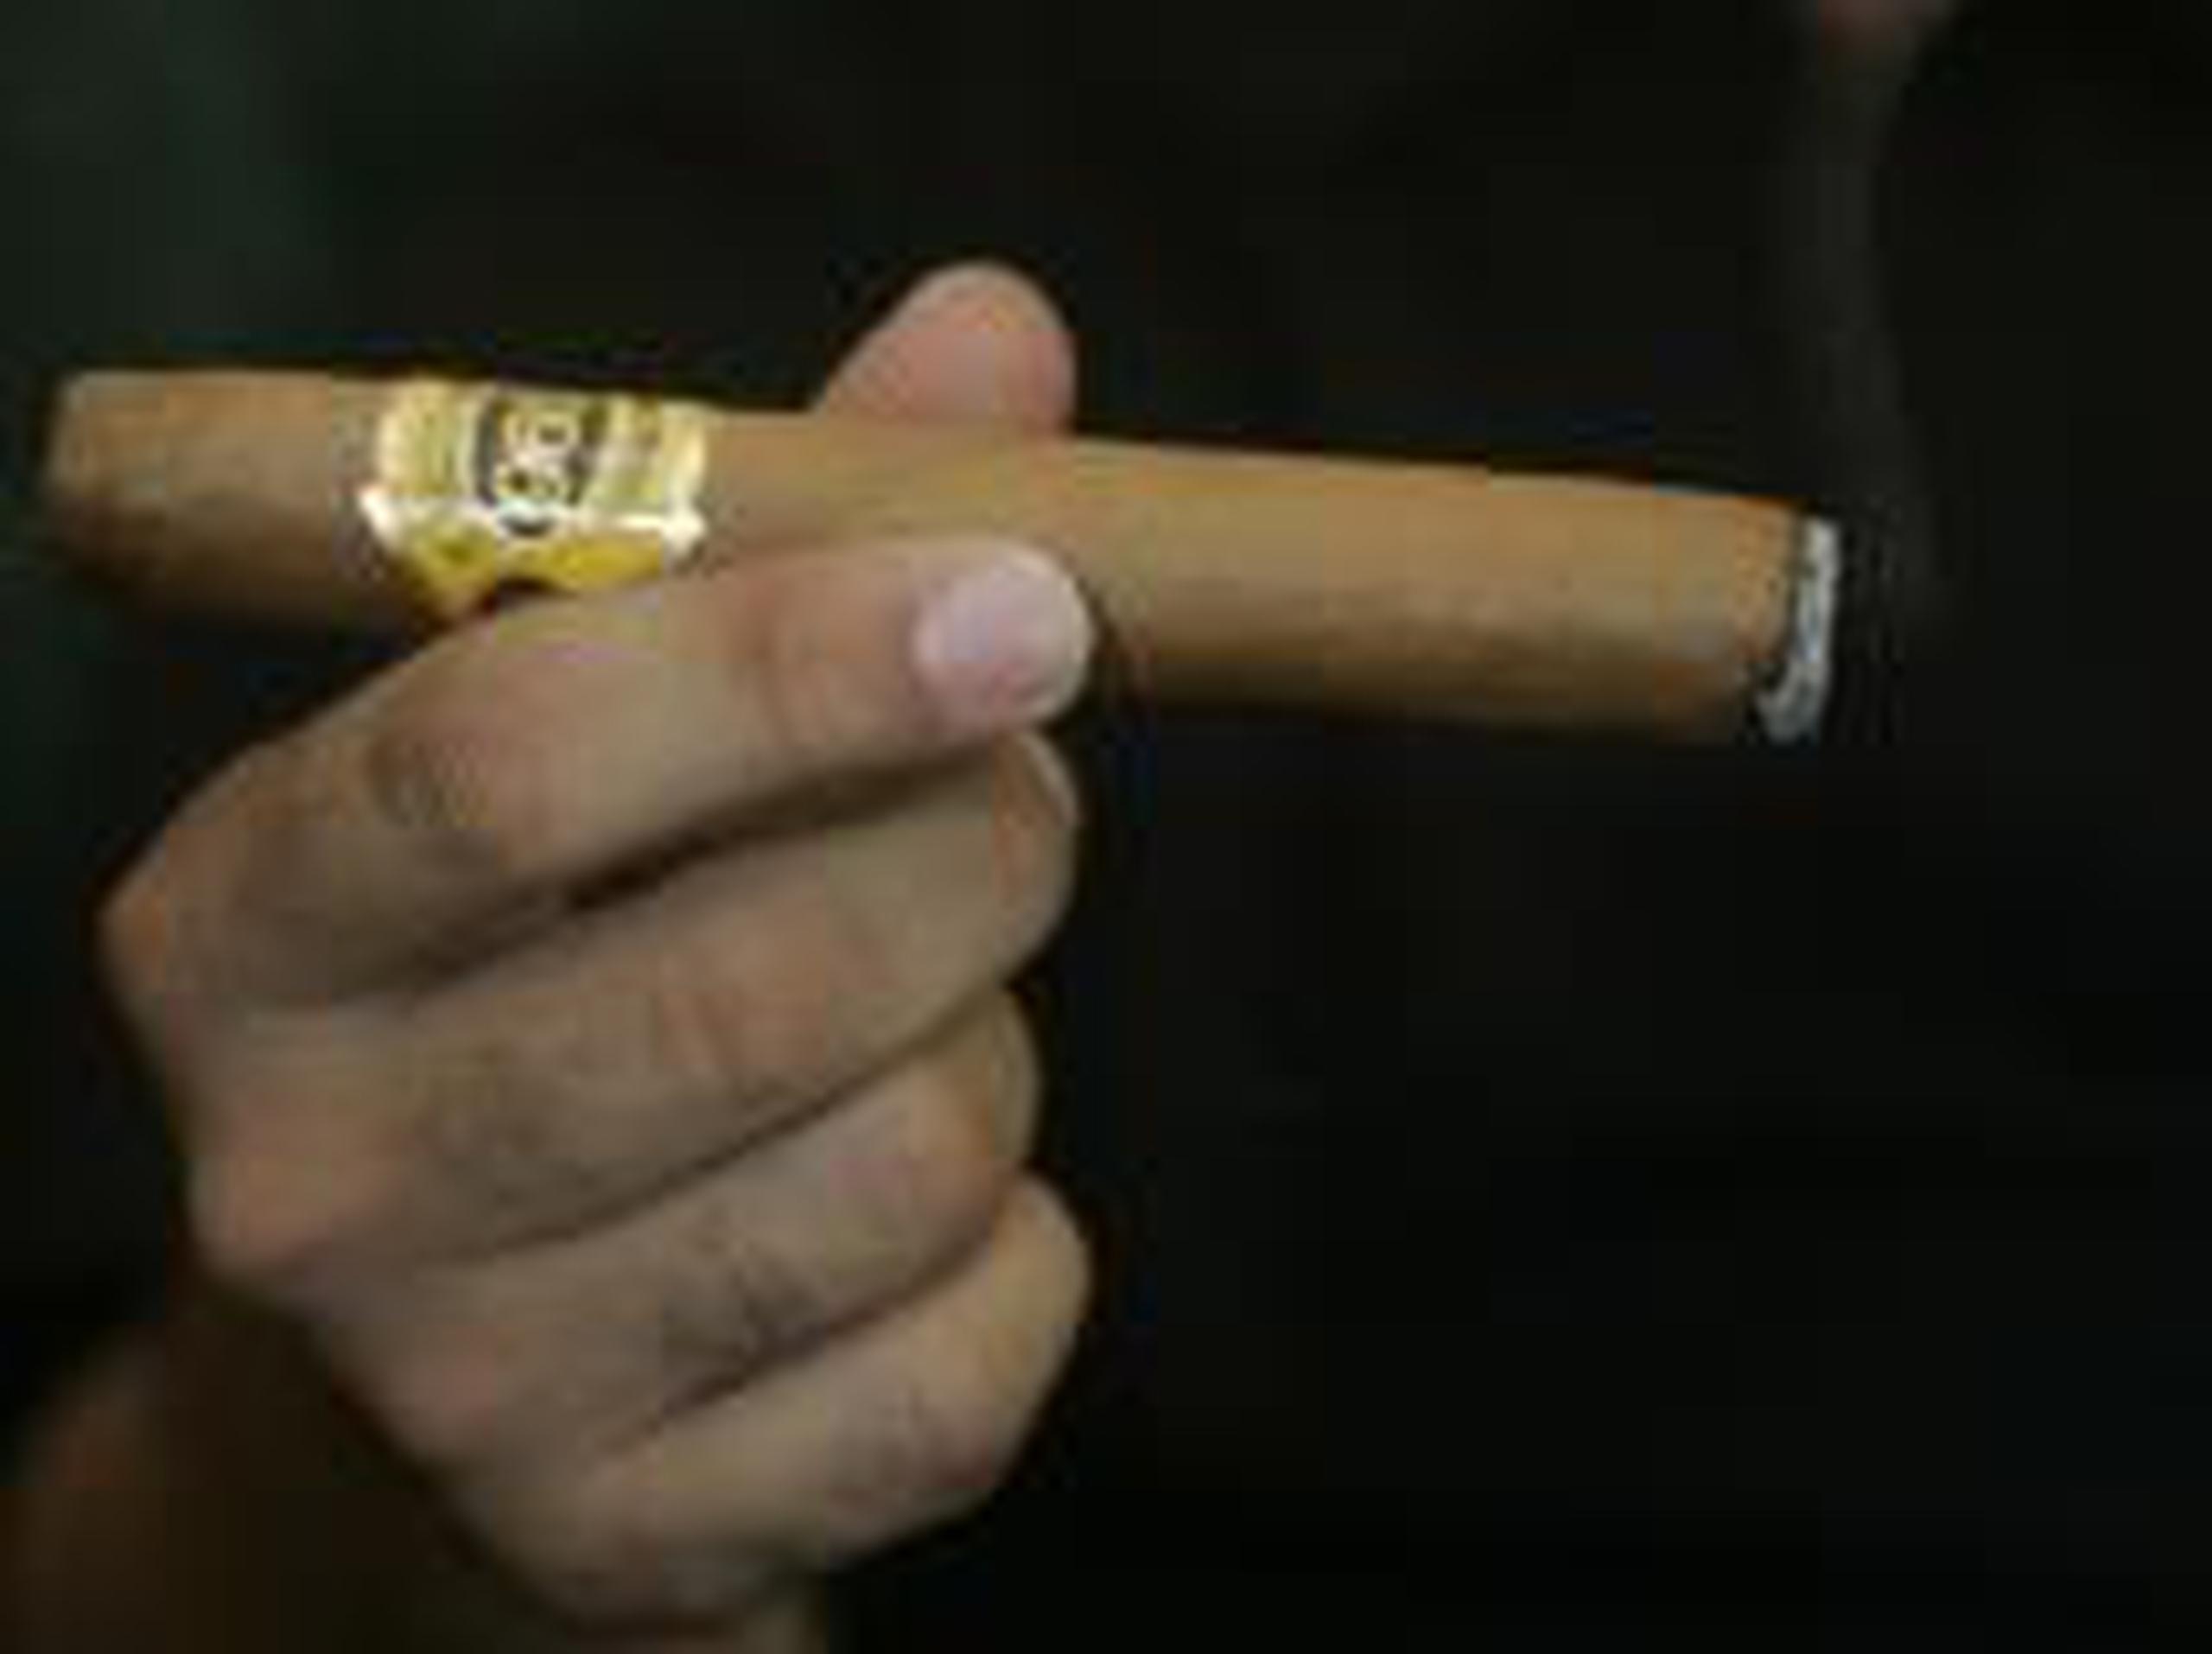 También una exhibición de mercado para demostrar la calidad del habano, uno de los tabacos premium más consagrados del mundo. (Archivo)